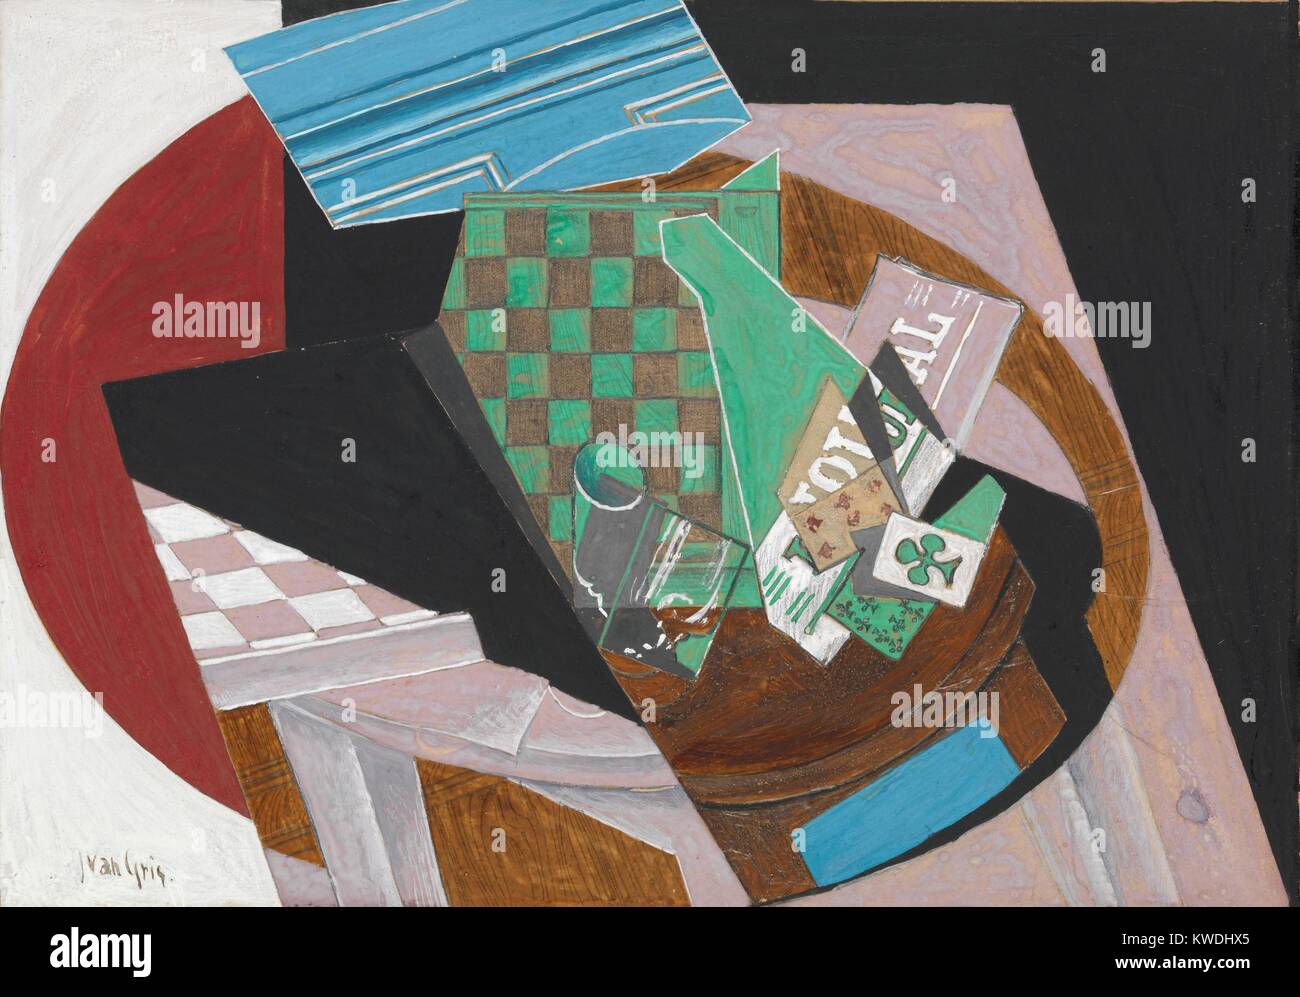 Schachbrettmuster und Karten spielen, von Juan Gris, 1915, Spanisch kubistischen Zeichnung, Aquarell, Graphit und Harz auf Papier. Die Zusammensetzung wird durch zwei vertikale Bögen der Tischplatte verankert, als Grundlage der visuellen Spiel der Abstrahierten figurativen Elemente (BSLOC 2017 7 7) Stockfoto